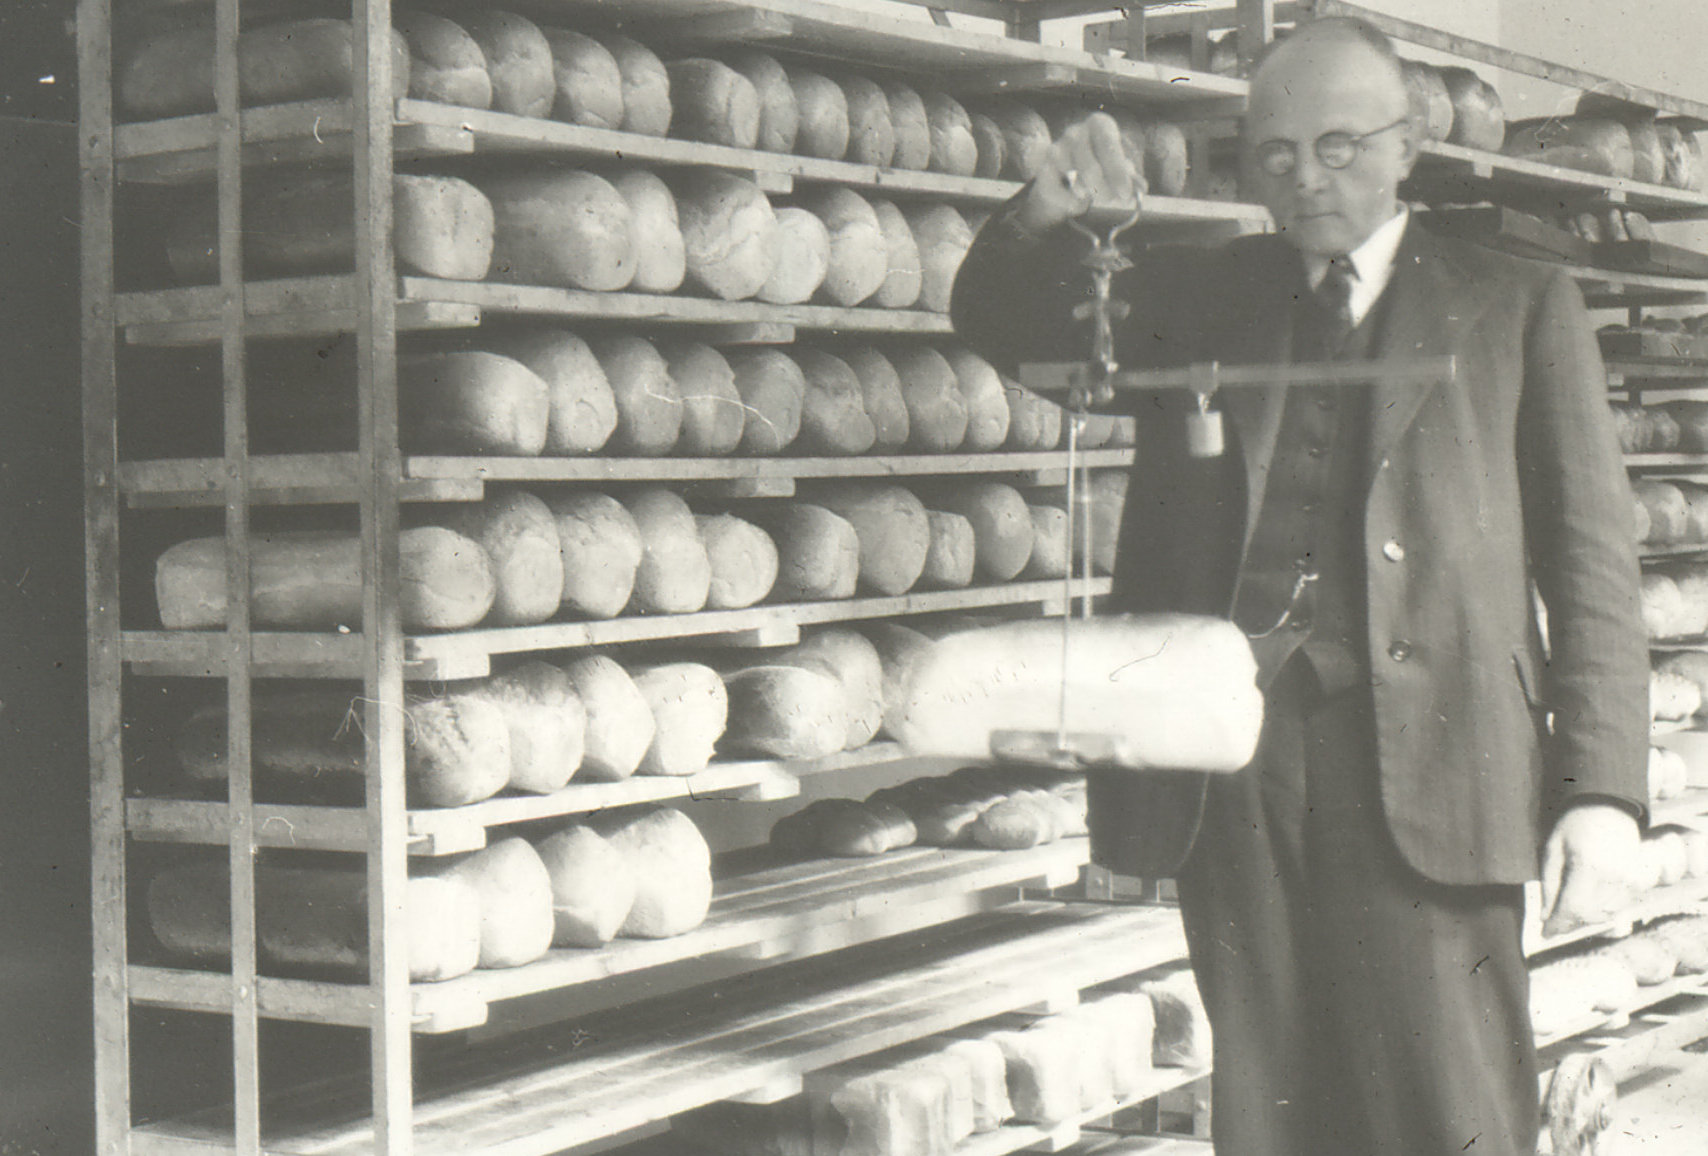 De keurringsdienst van waren inspecteert het broodgewicht, ca. 1925.